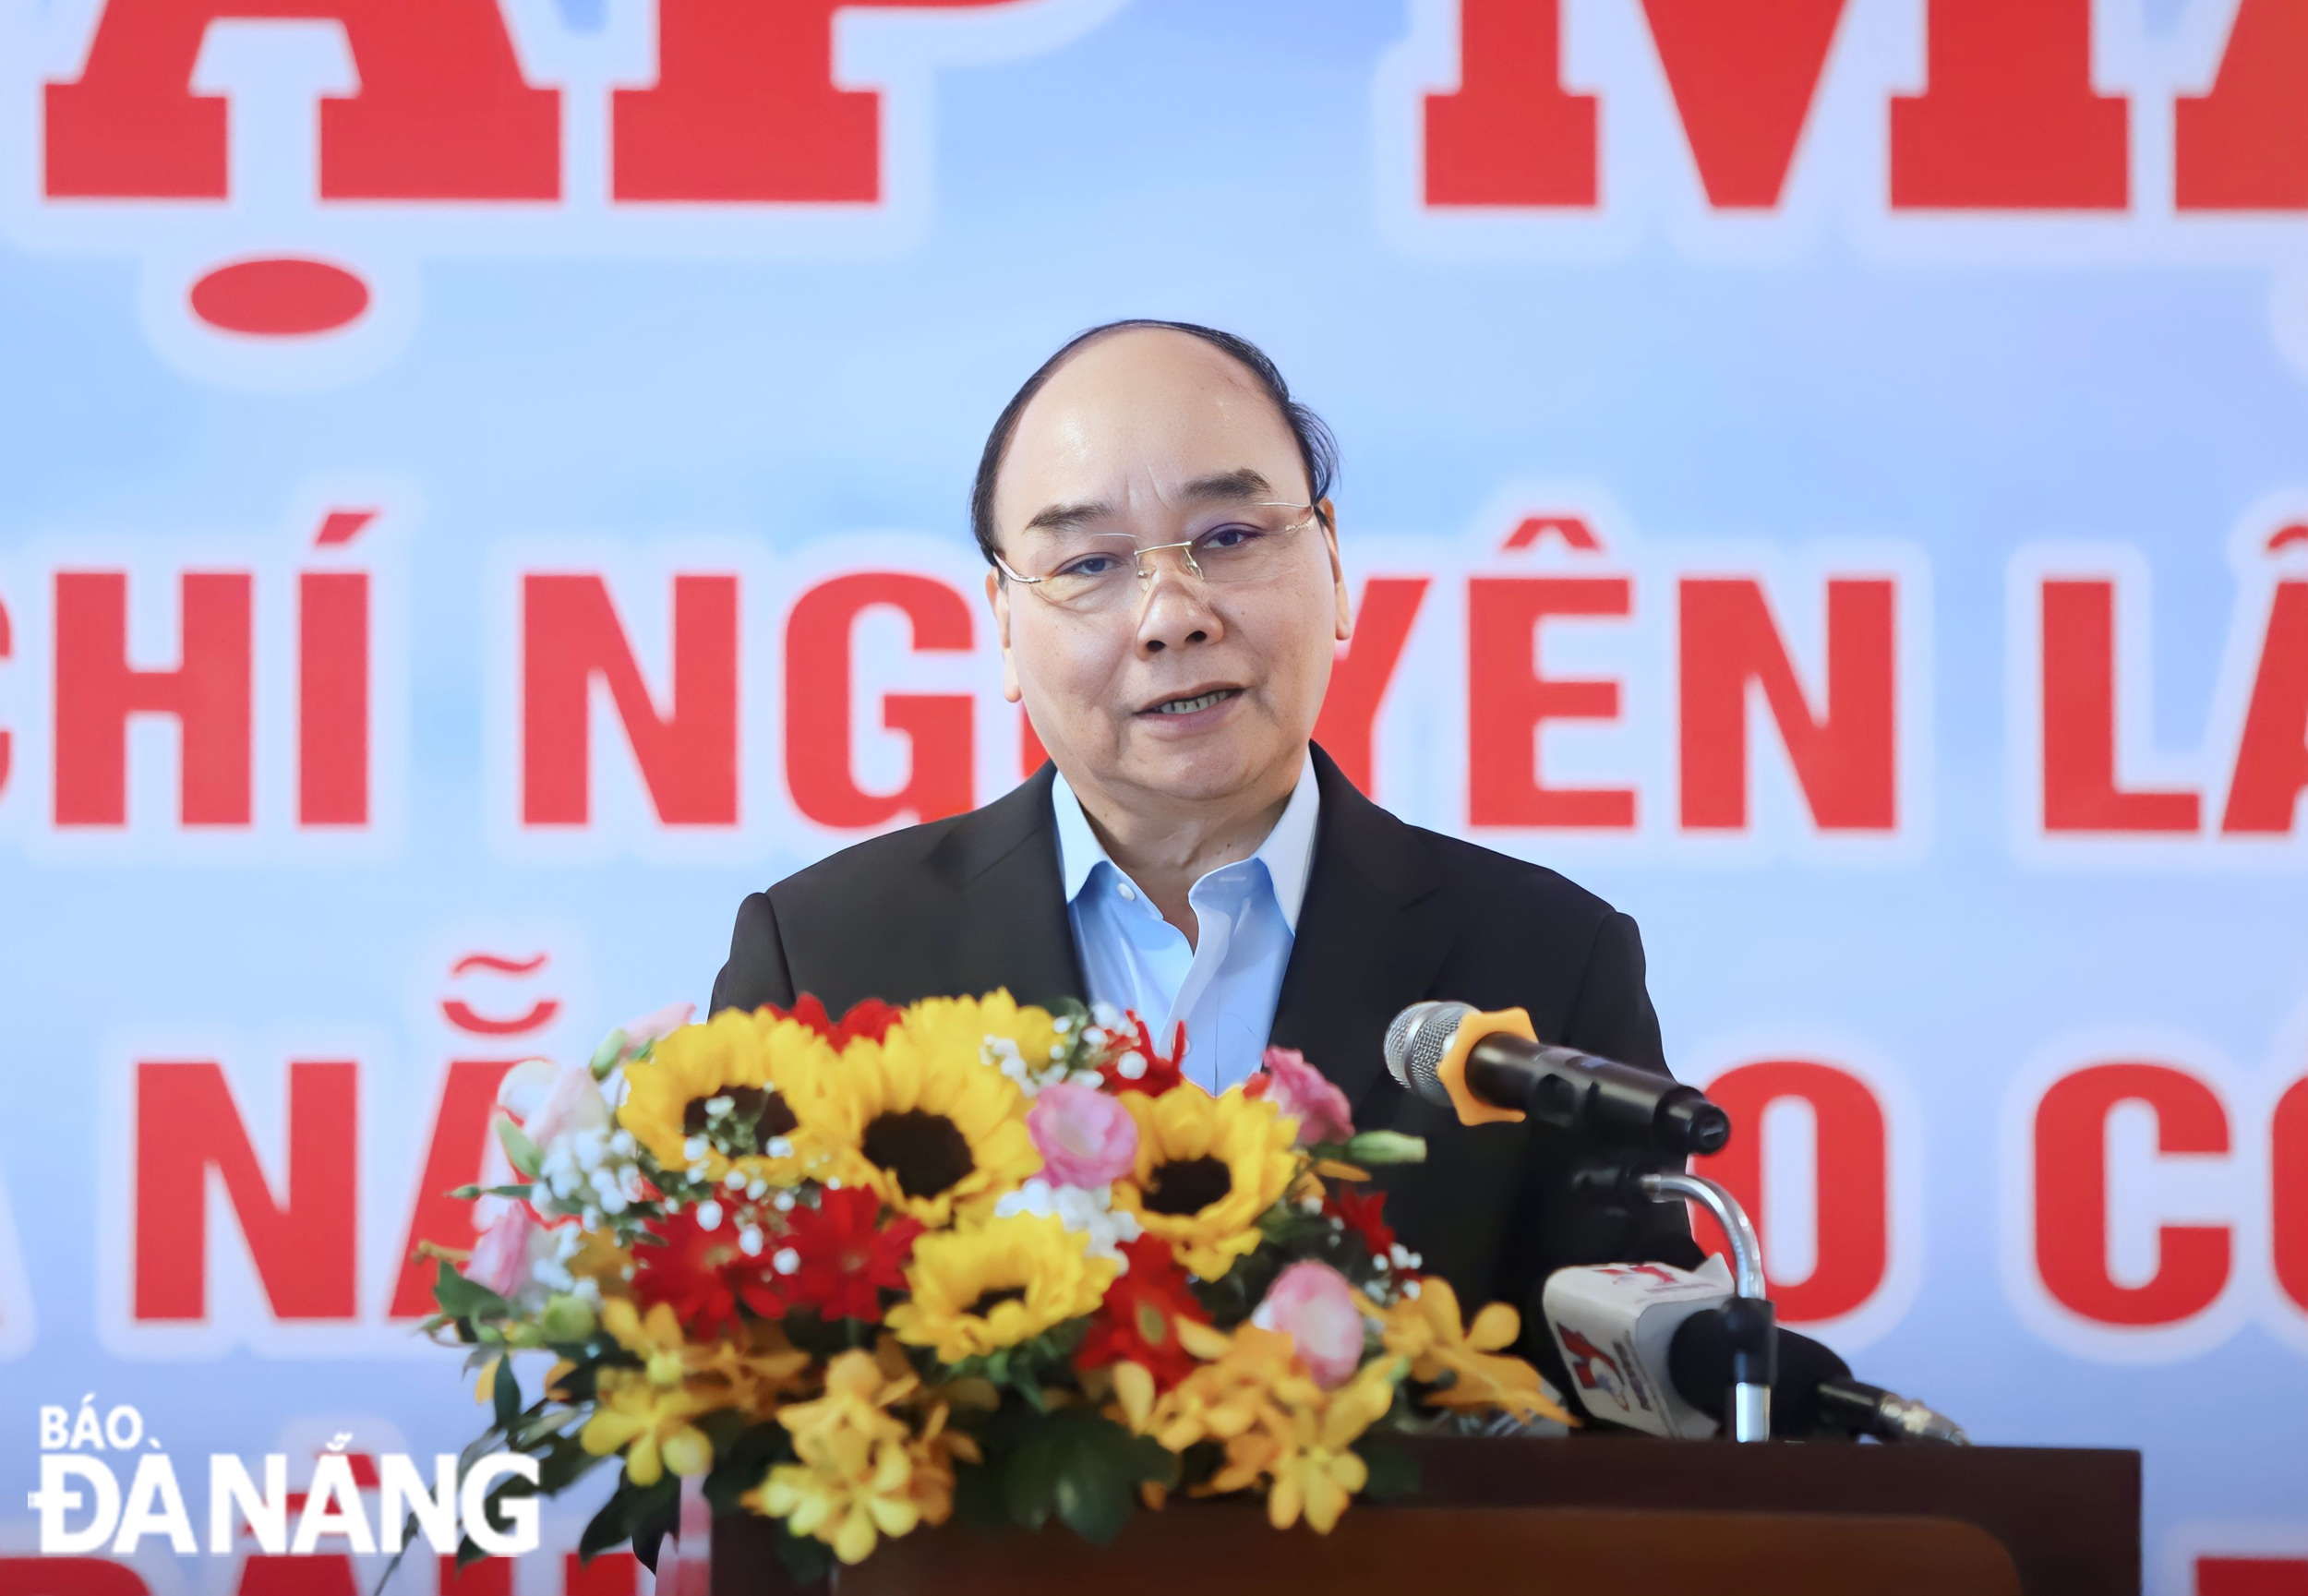 Chủ tịch nước Nguyễn Xuân Phúc gặp mặt cán bộ nguyên lãnh đạo tỉnh Quảng Nam - Đà Nẵng vào công tác tại tỉnh Quảng Nam